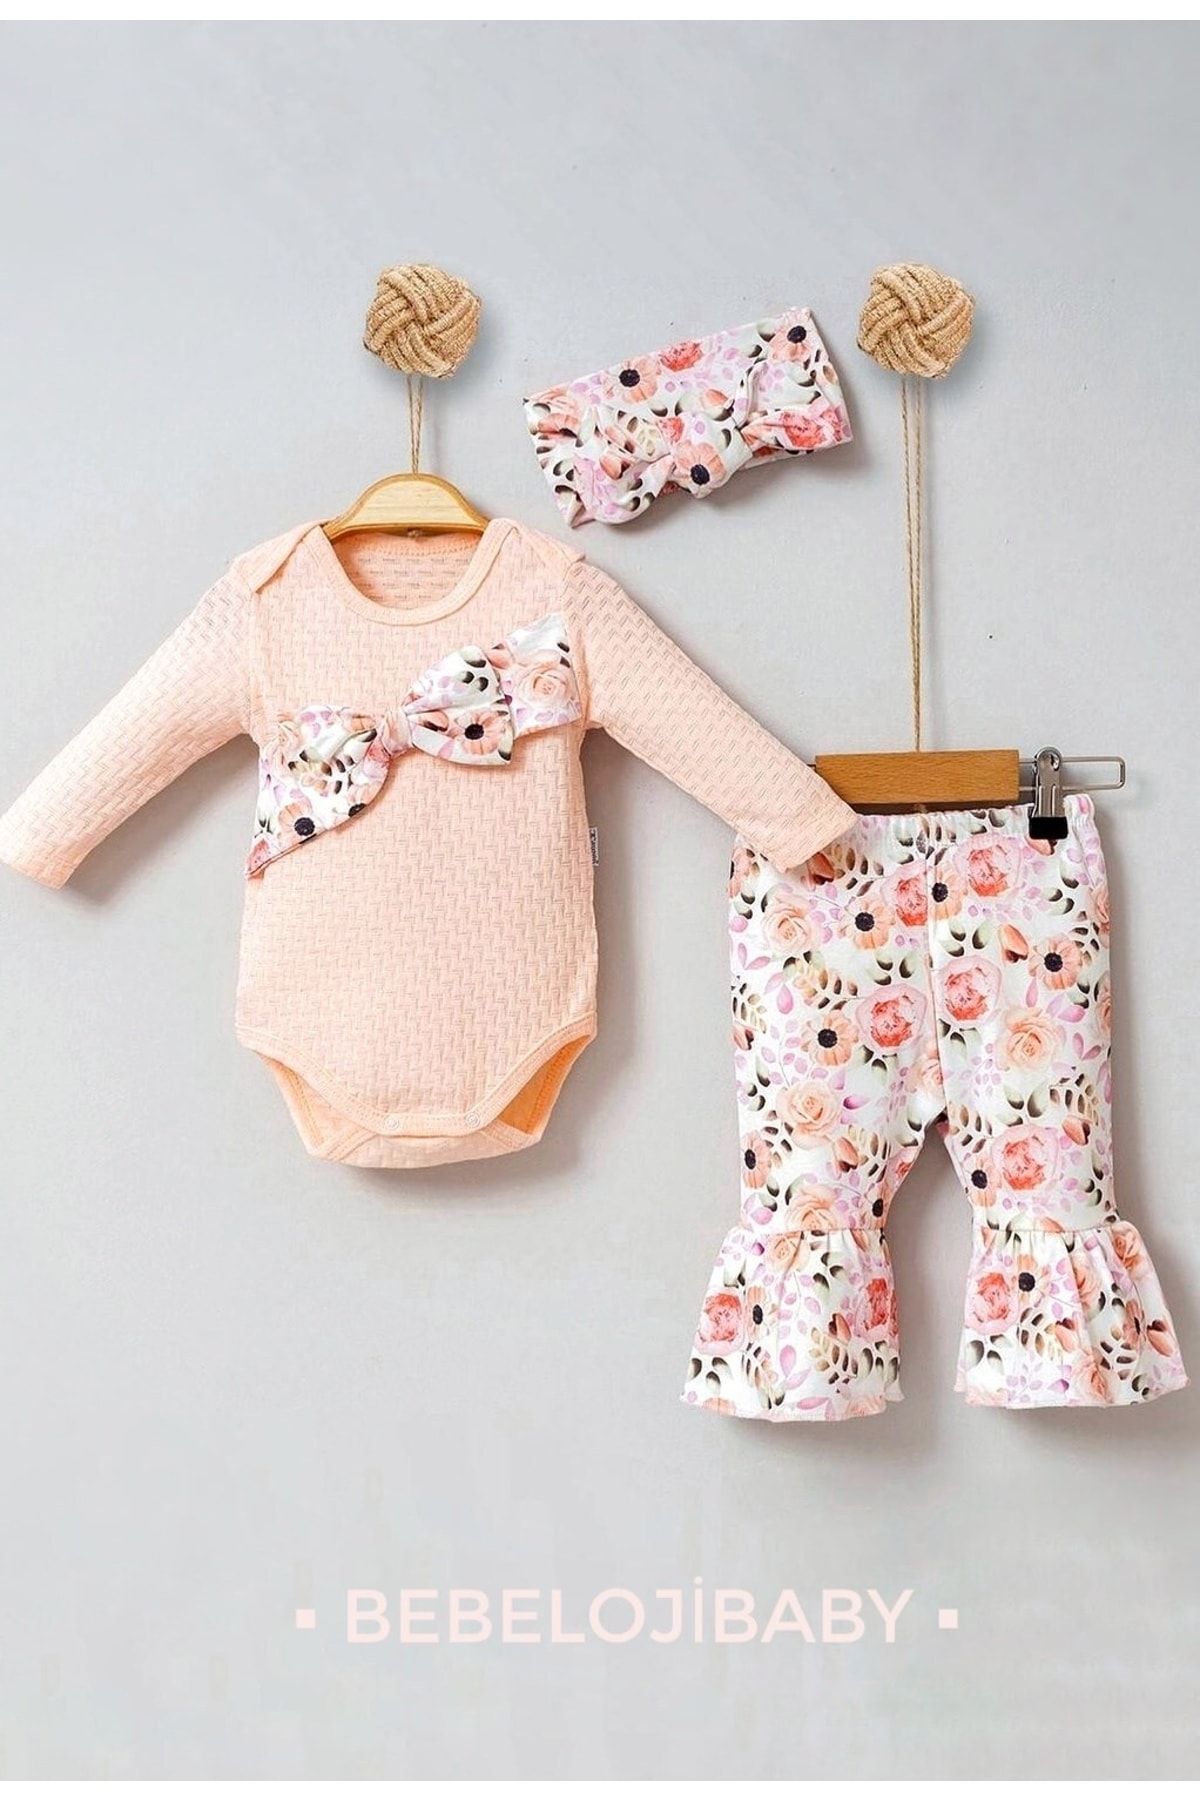 Bebeloji Baby Jakarlı Bahar Çiçekleri Kız Bebek 3'lü Takım Yenidoğan Kıyafeti